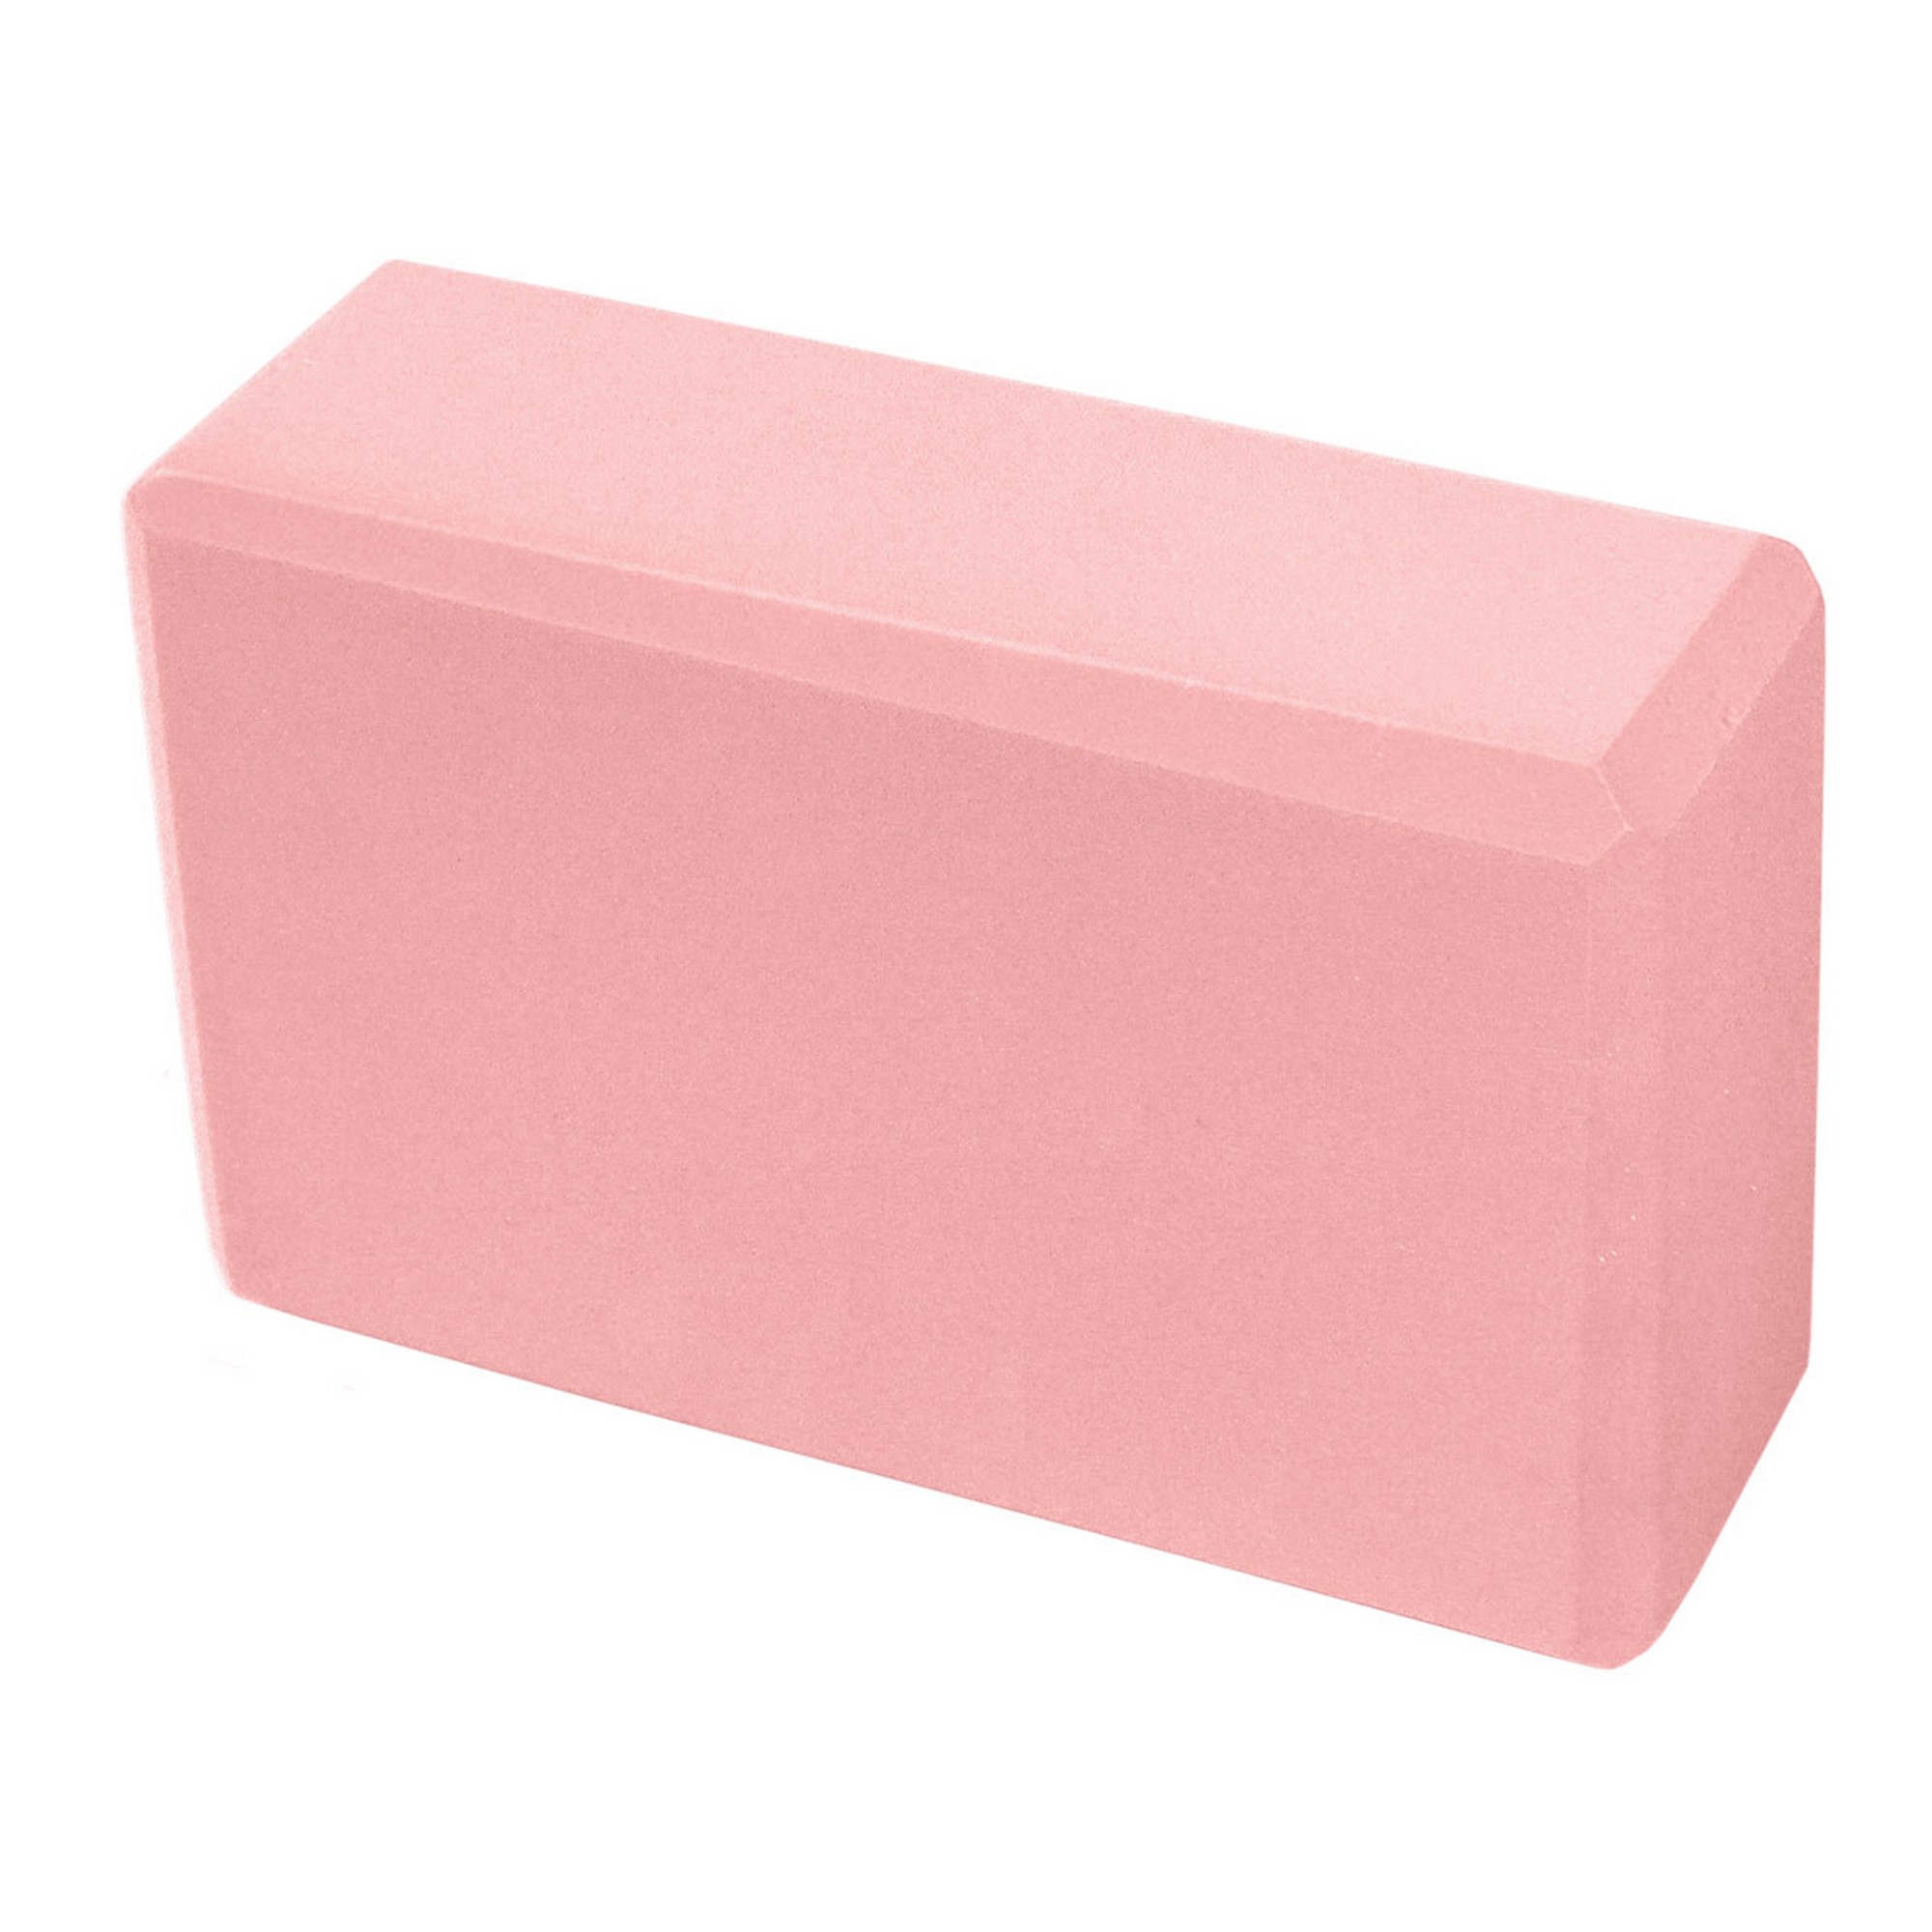 Йога блок Sportex полумягкий, из вспененного ЭВА 22,3х15х7,6 см E39131-9 светло розовый